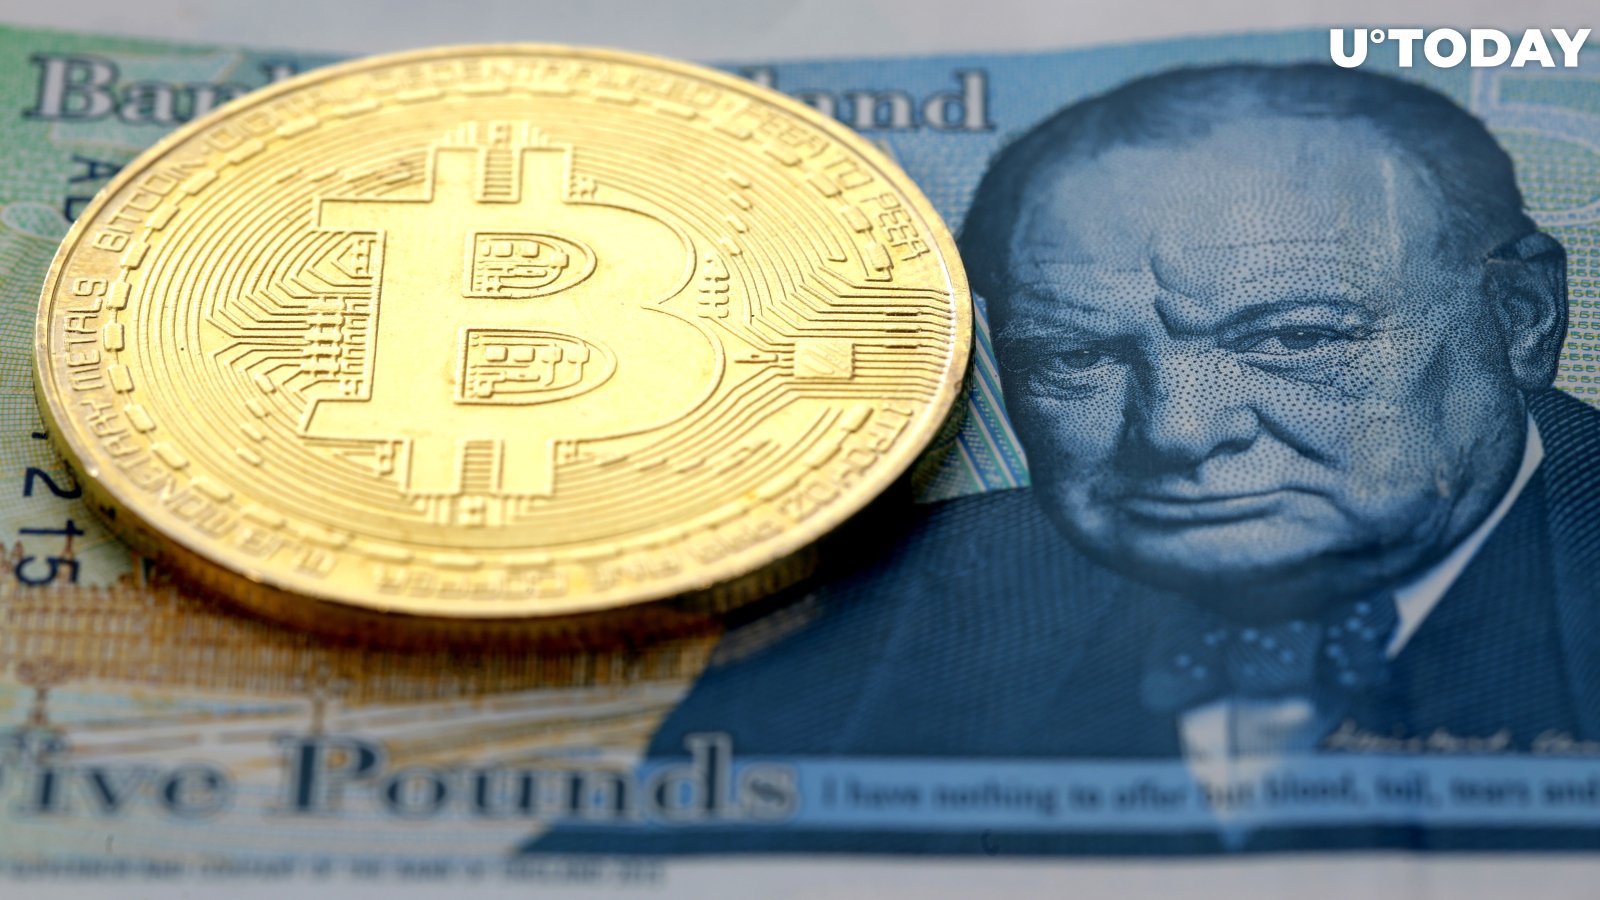 £20 Billion Asset Manager Ruffer Announces Bitcoin Allocation After Dumping Gold